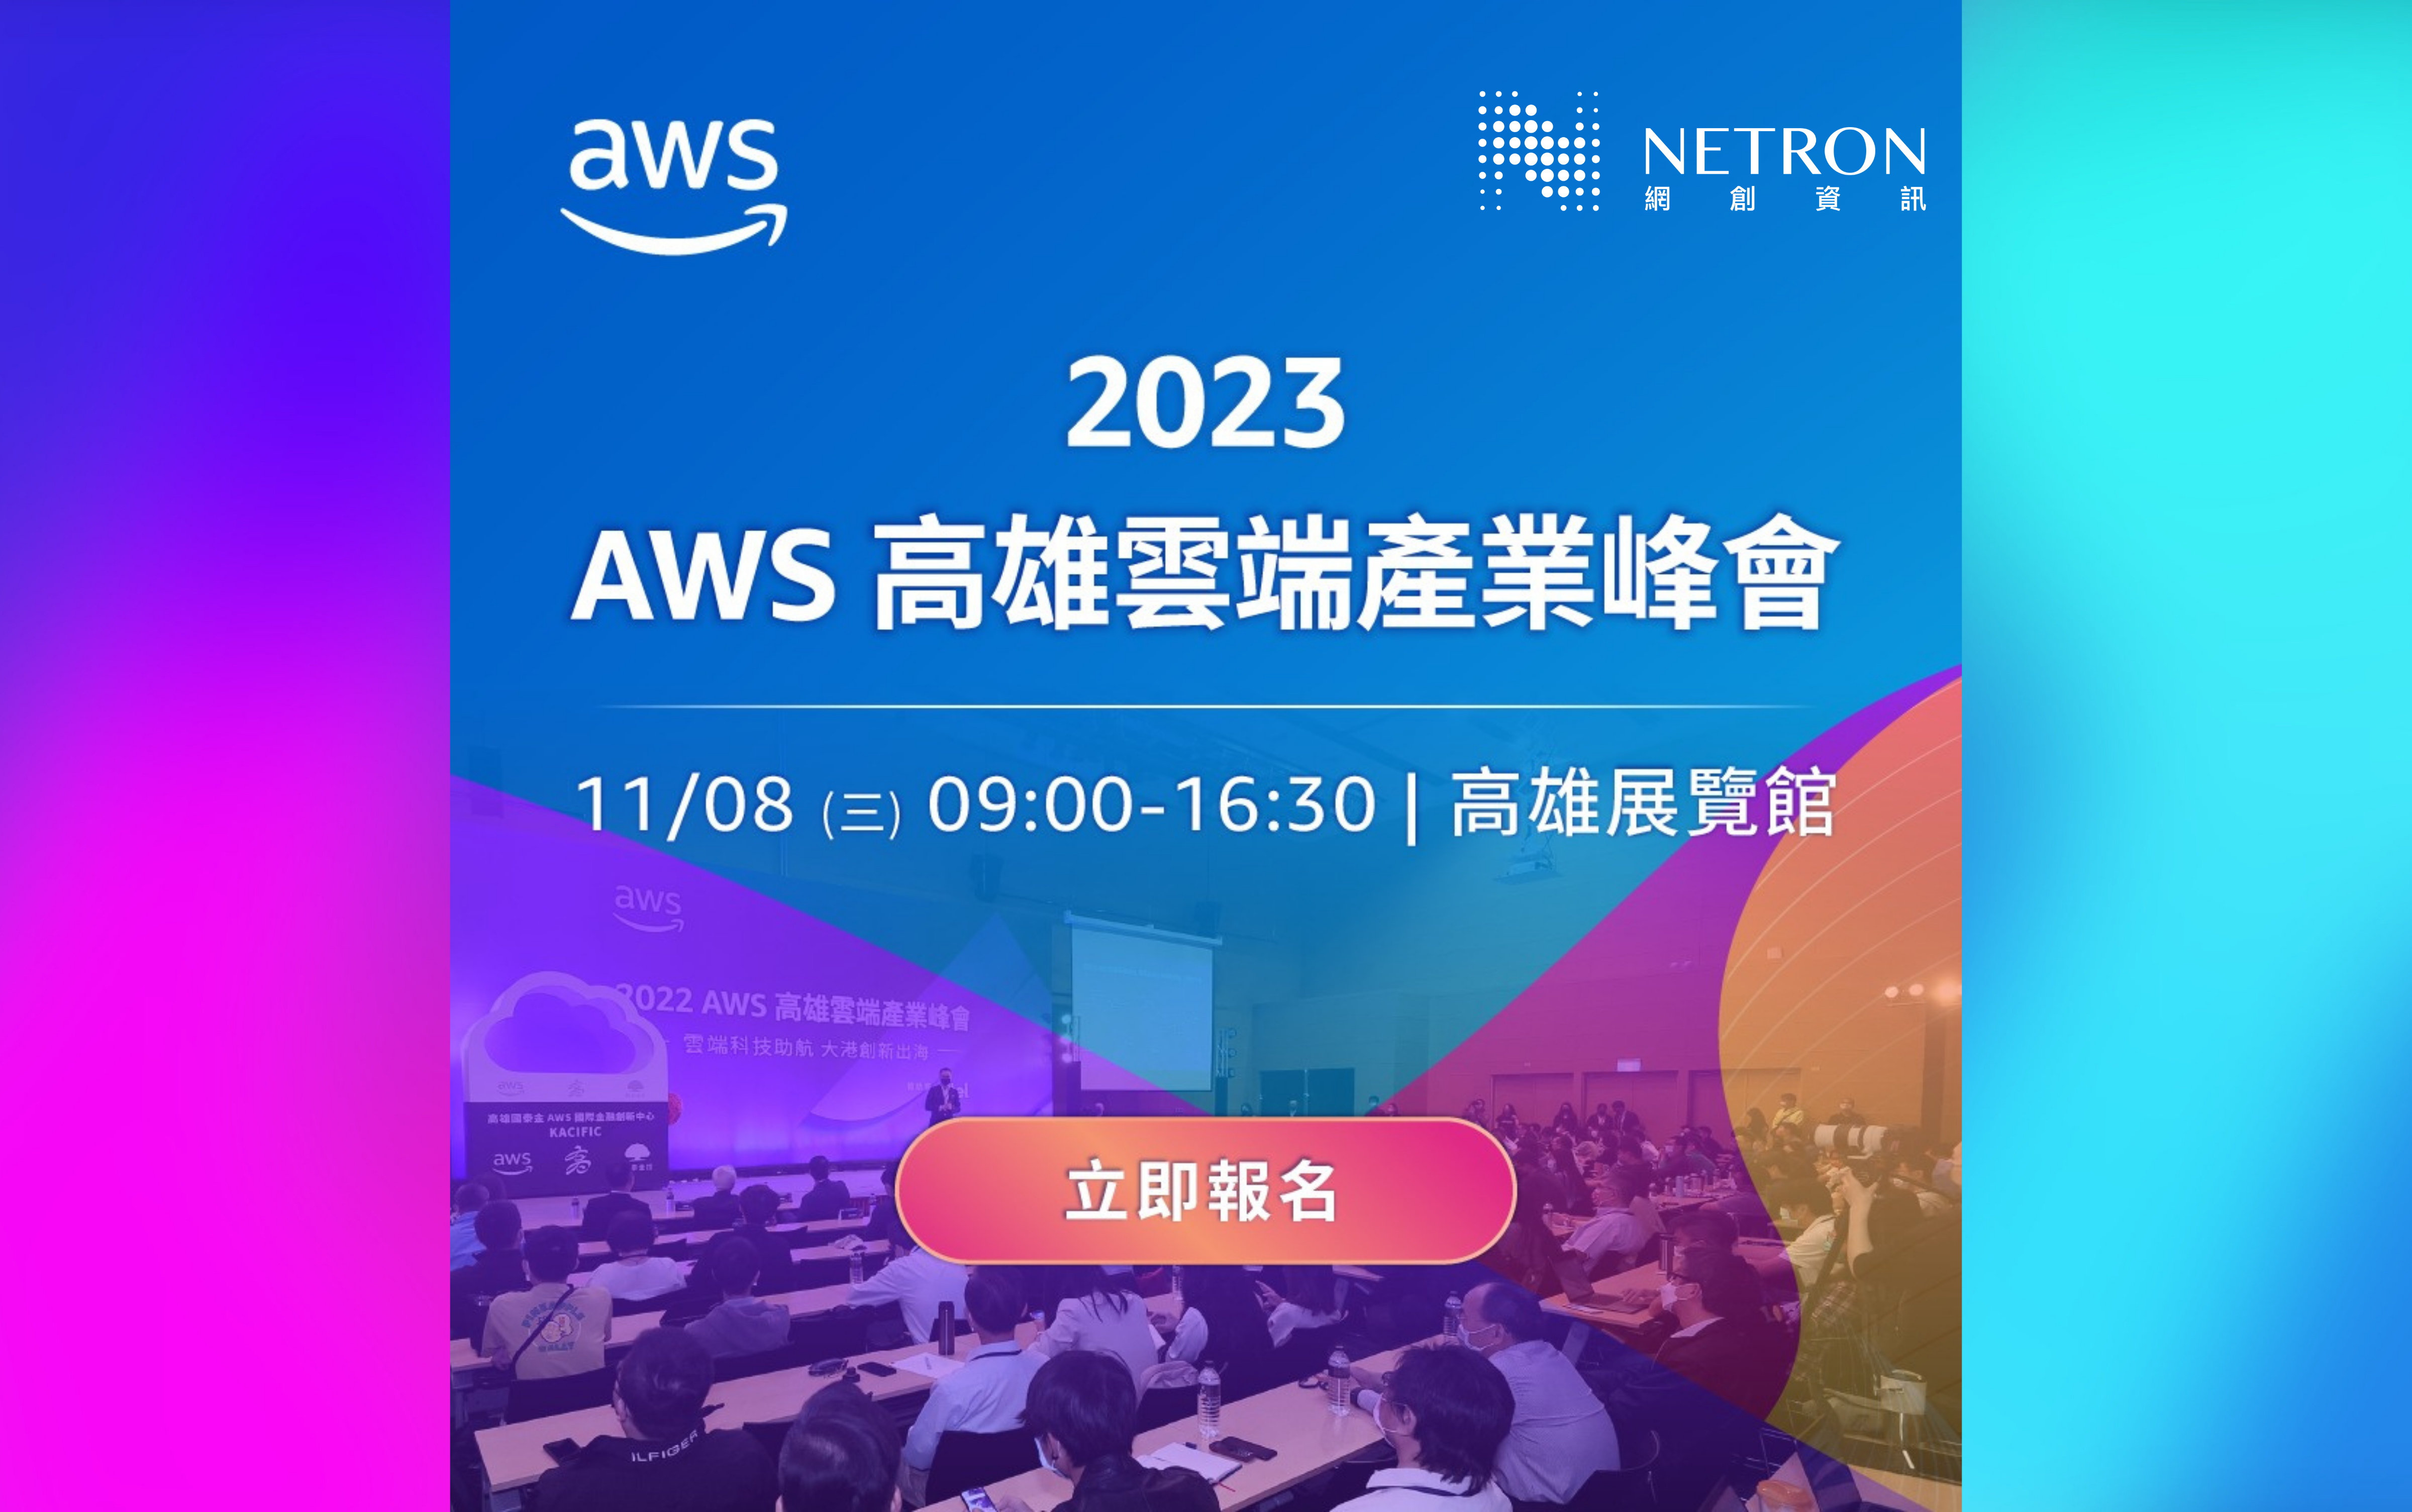 【雲端活動】2023 AWS Summit 高雄雲端產業峰會